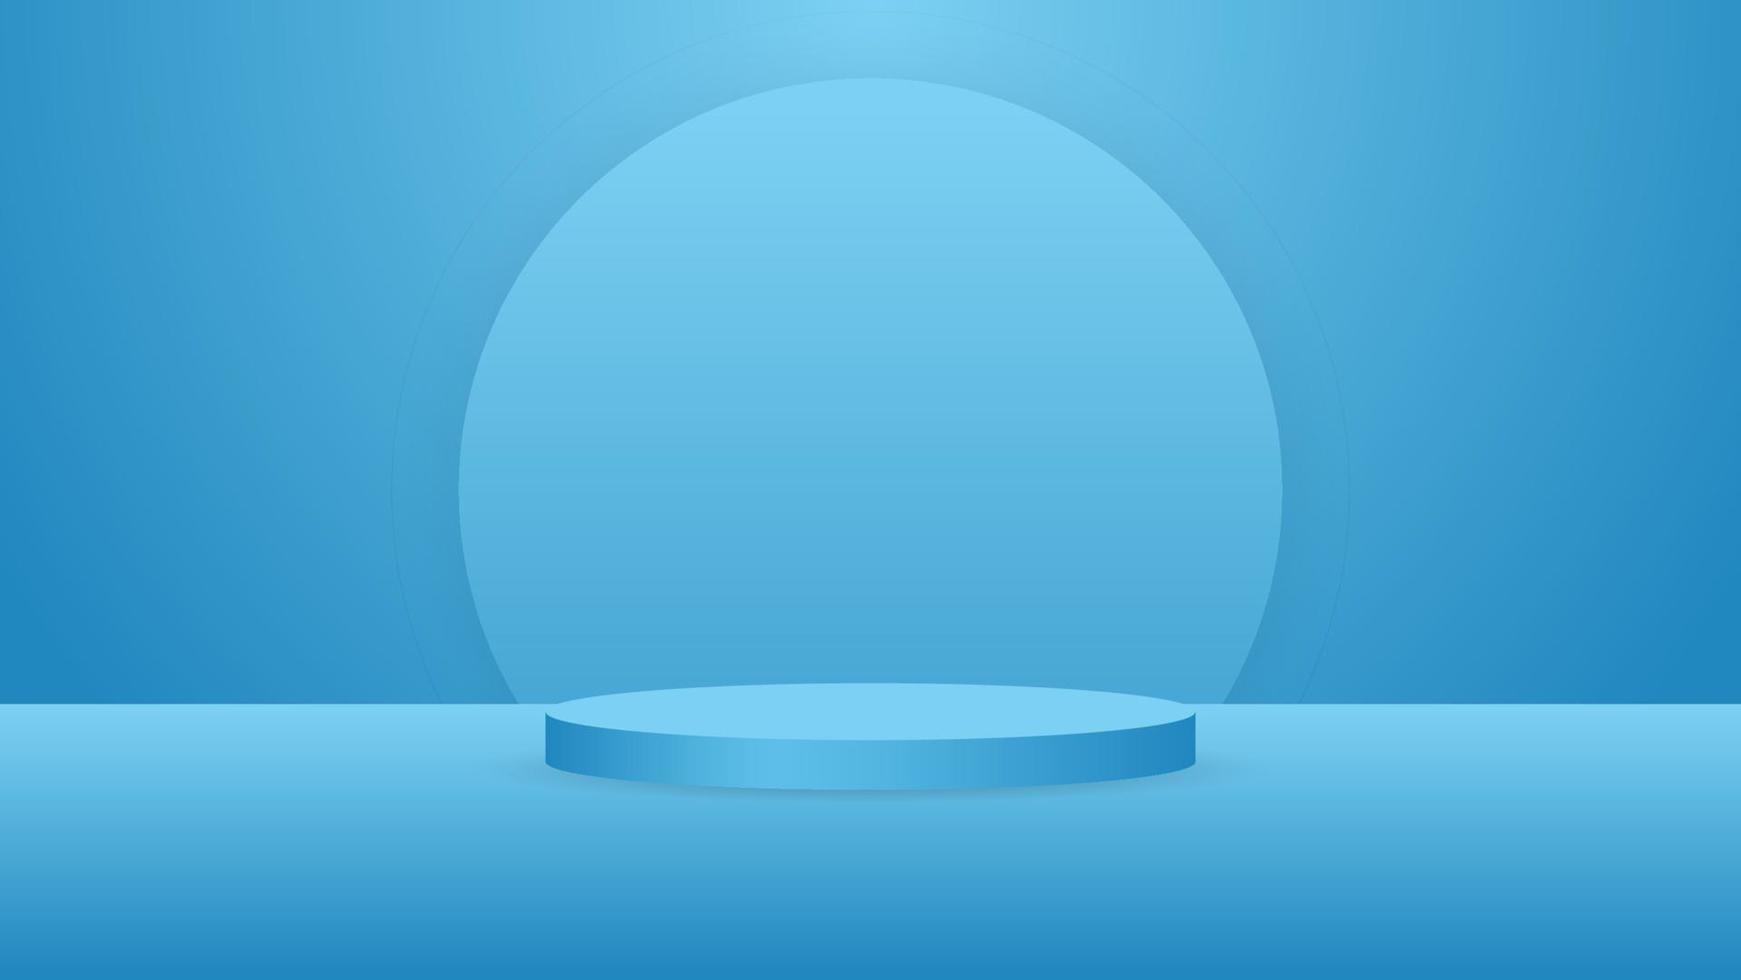 blanco ronde voetstuk. blauw circulaire podium voor uitstekend luxe Product reclame Scherm Aan kleur achtergrond met minimaal stijl in studio kamer vector